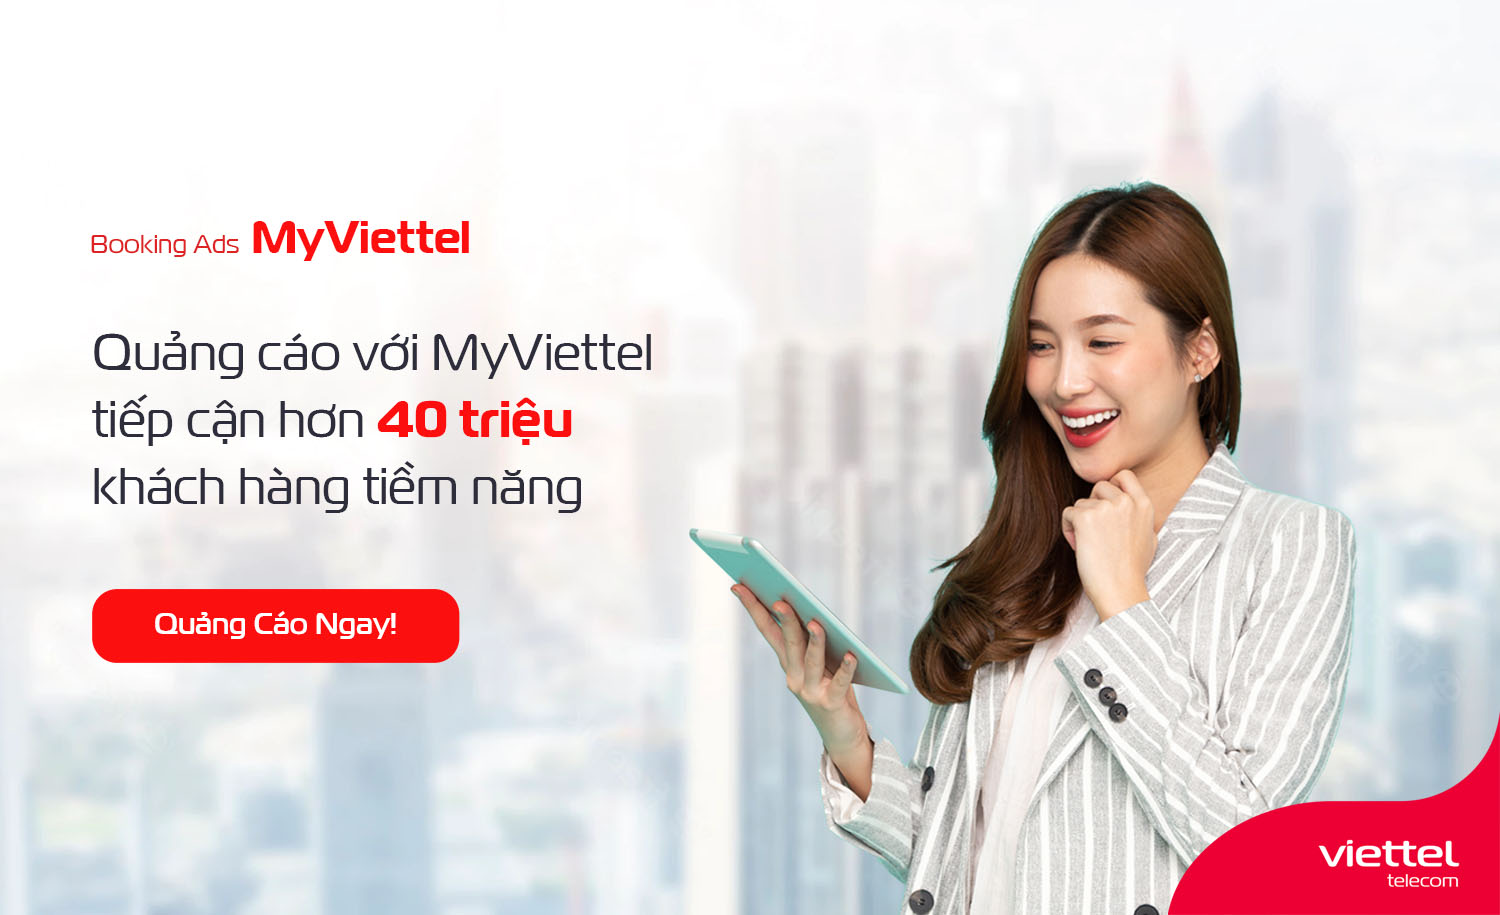 Viettel Telecom là một trong những nhà cung cấp dịch vụ viễn thông uy tín tại Việt Nam. Với những sản phẩm và dịch vụ đa dạng, chất lượng cao, Viettel Telecom luôn đáp ứng được nhu cầu của người dùng và trở thành đối tác tin cậy của nhiều doanh nghiệp lớn tại Việt Nam.